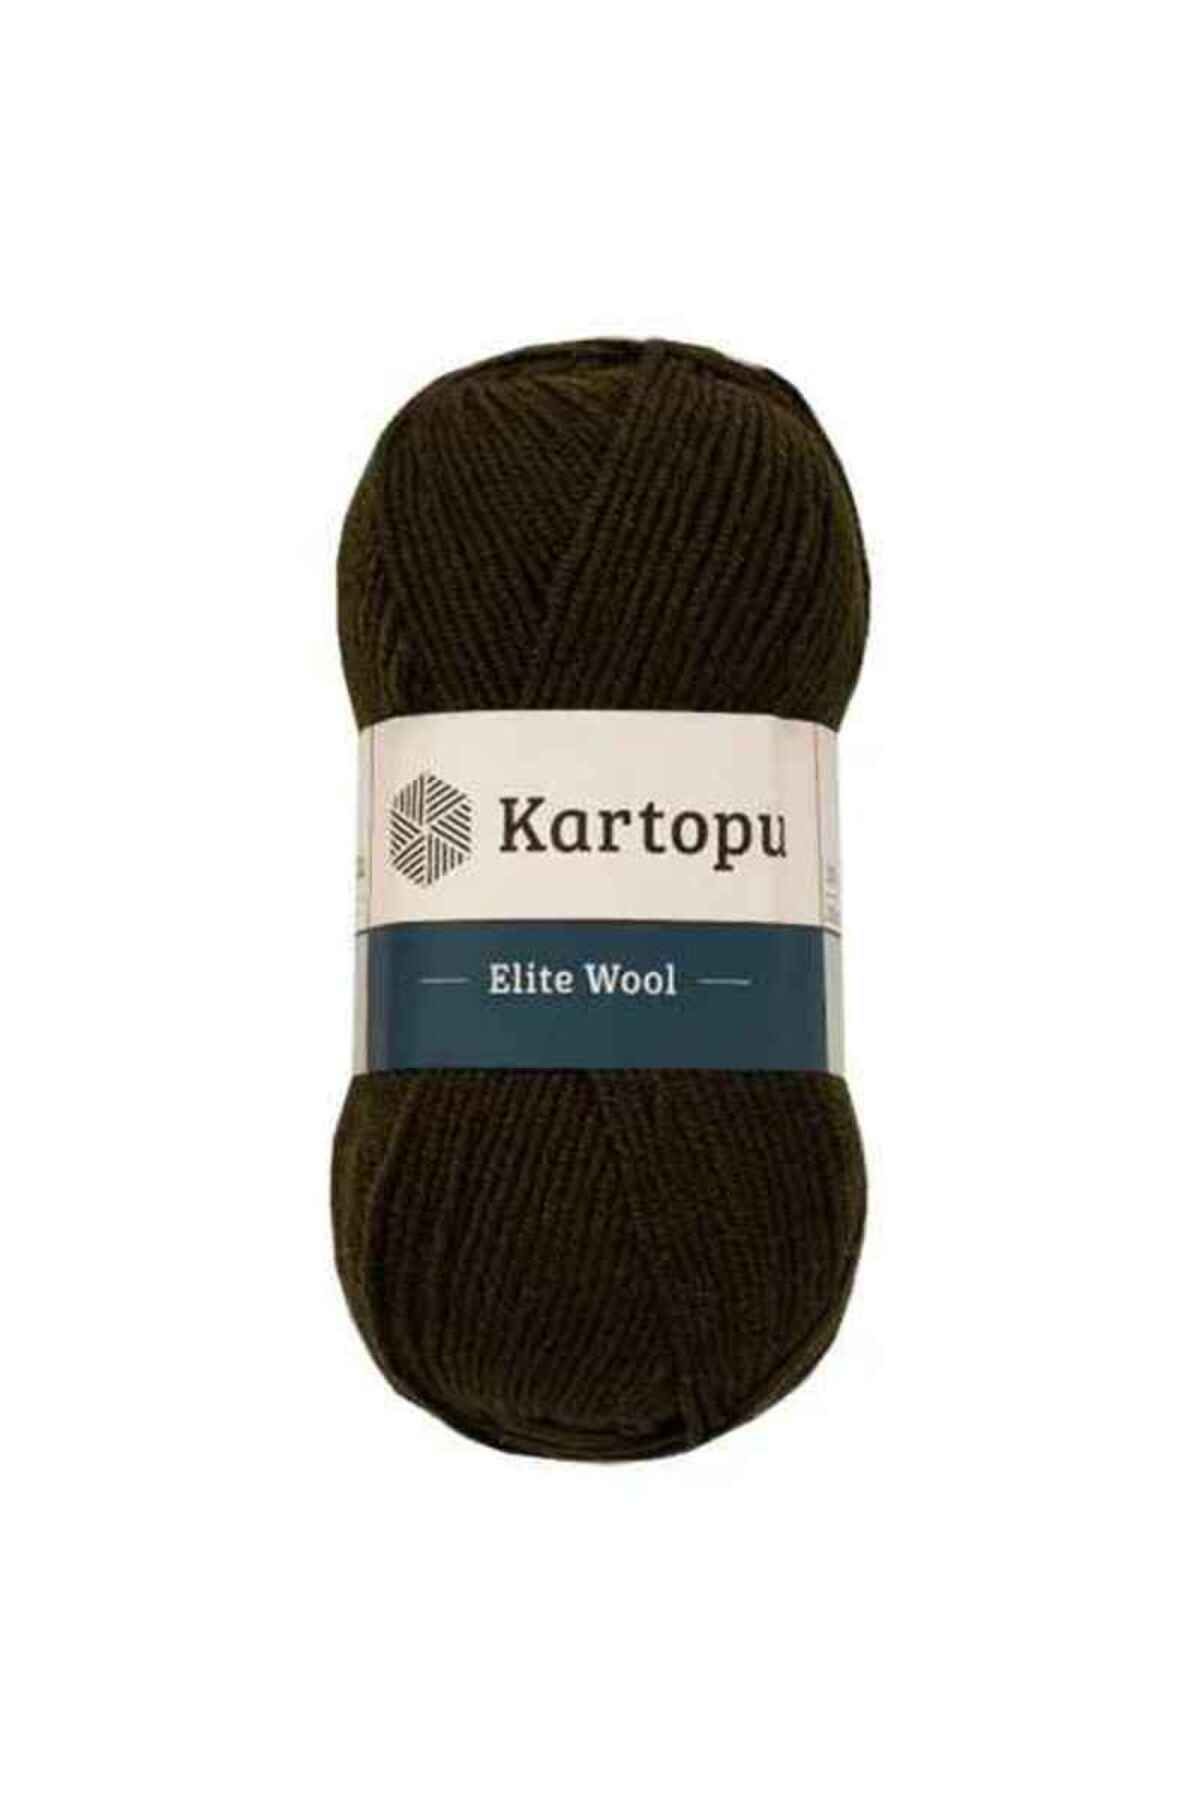 Kartopu Elite Wool K1404 Haki Yeşil %49 Yün Örgü İpi Kazak & Süveter & Hırka & Yelek Kışlık Örgü İpi